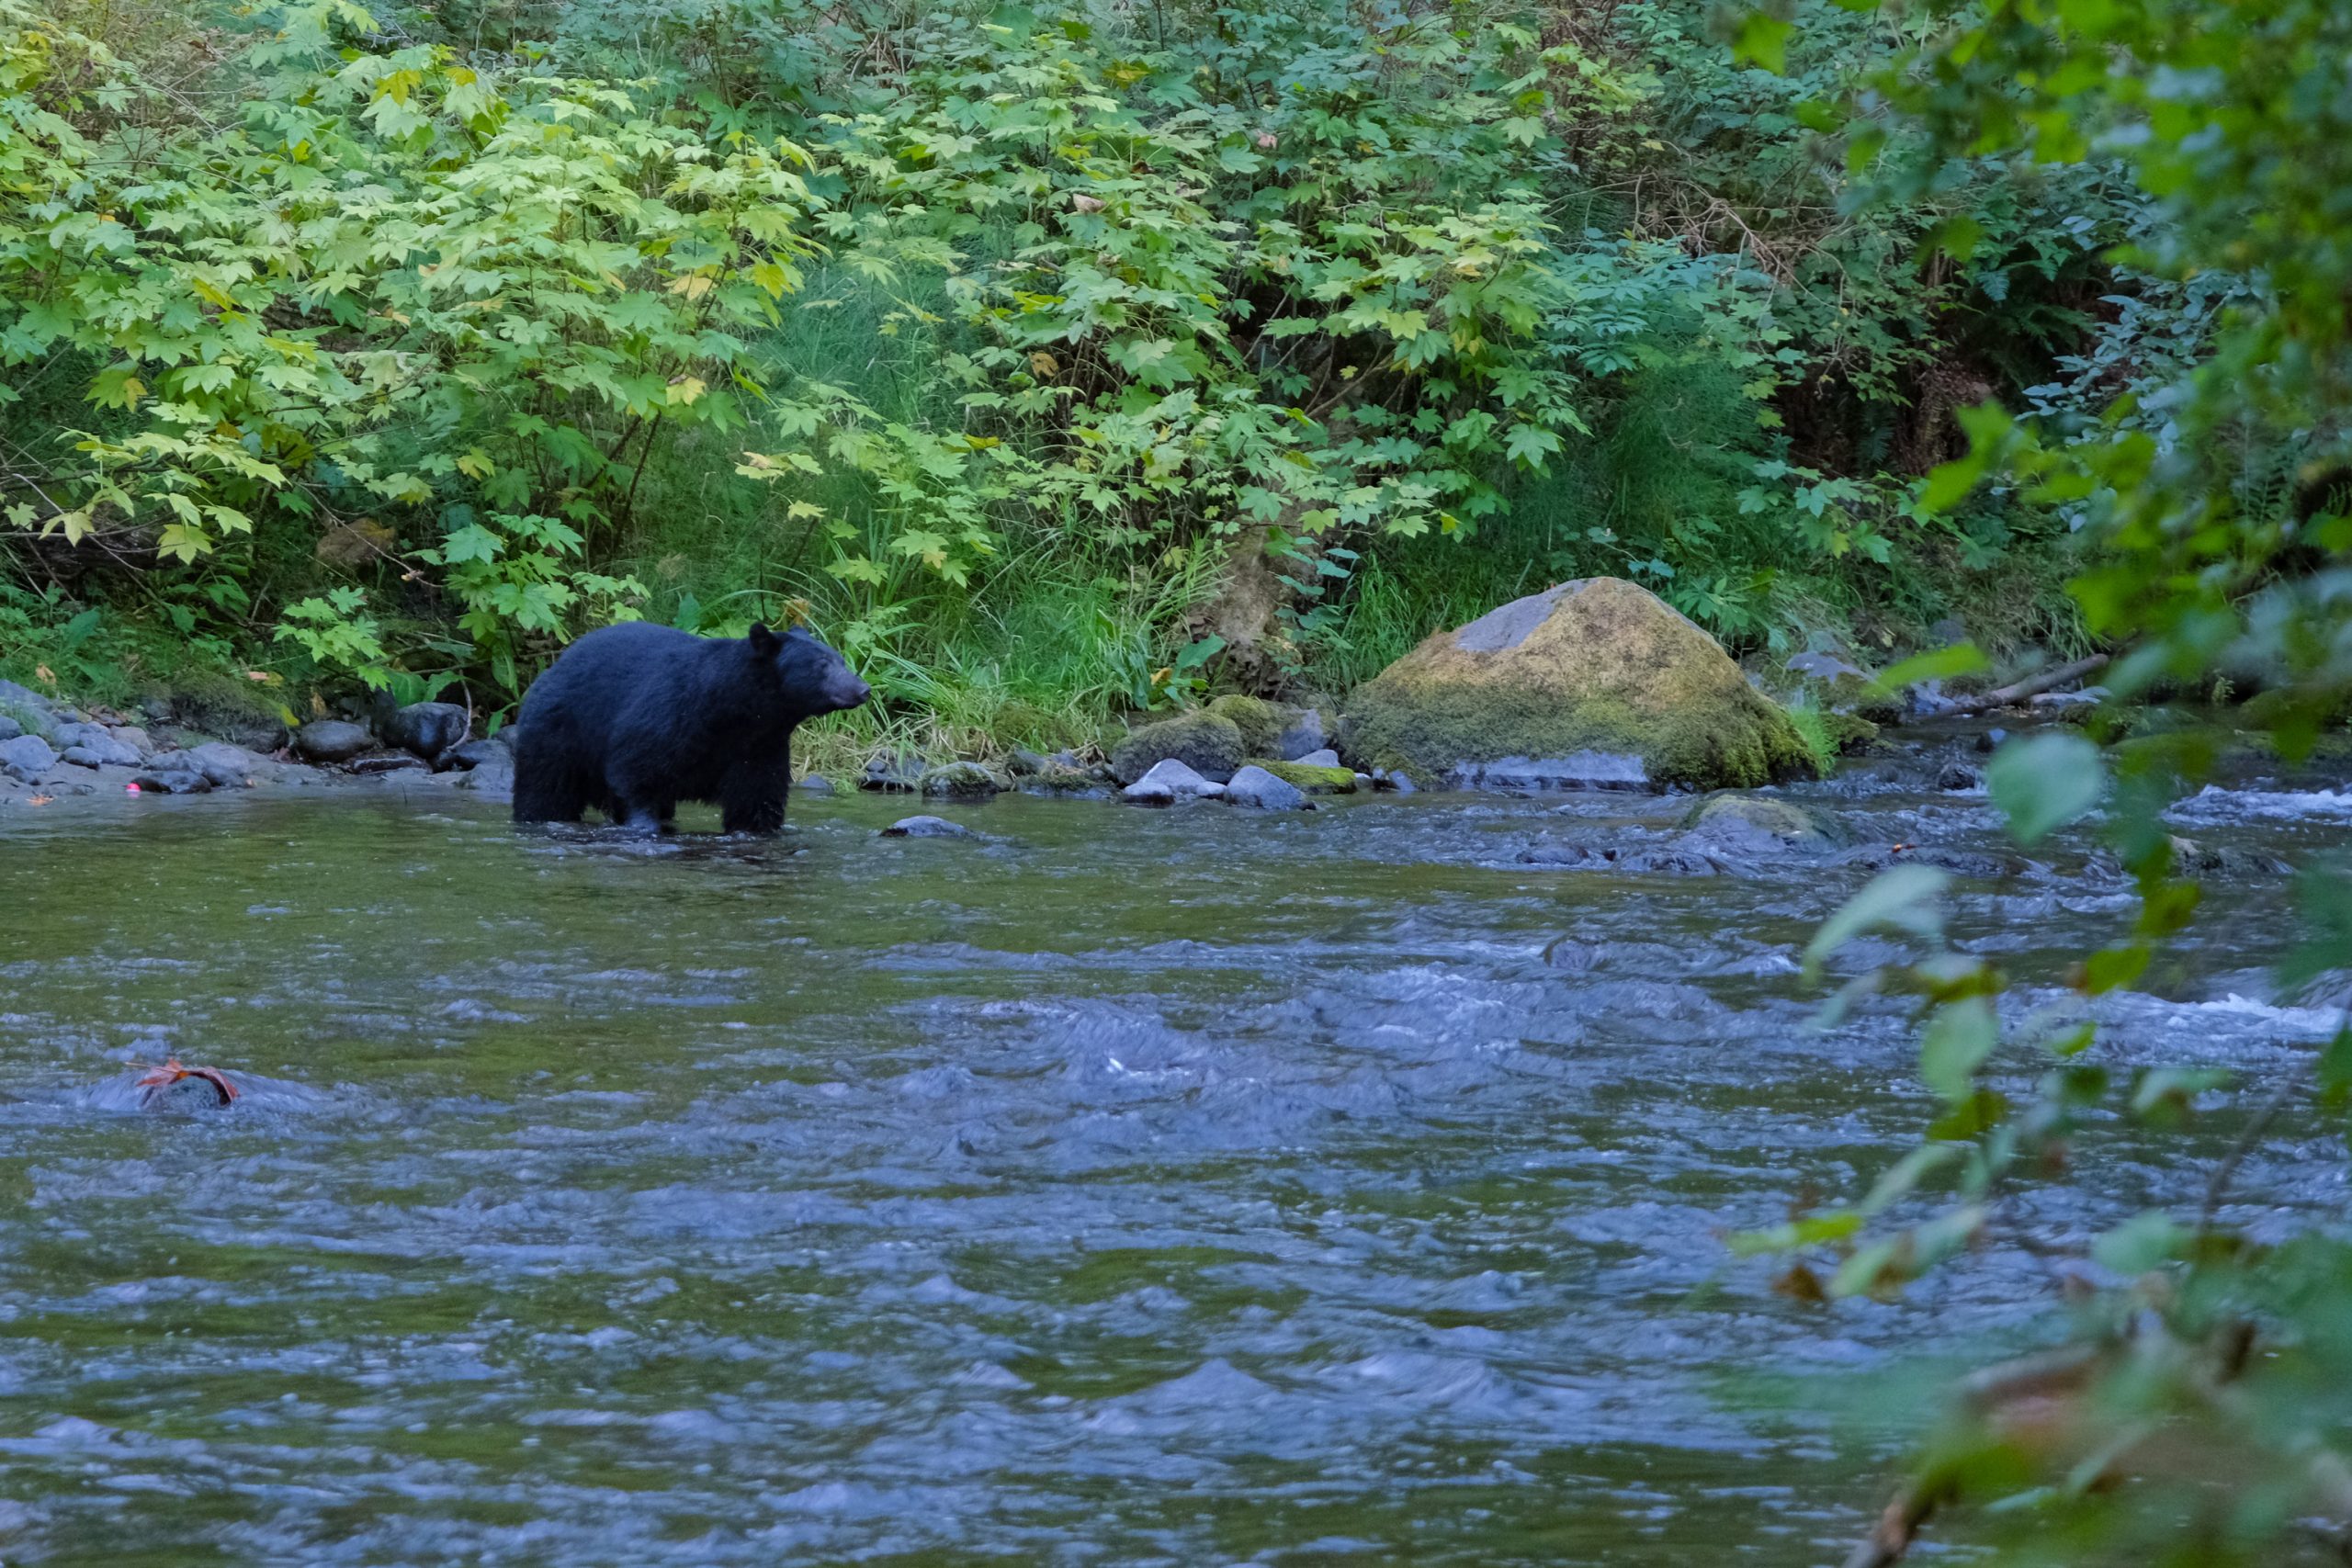 De beer ruikt en snuffelt, op zoek naar voedsel | Beren spotten in Canada